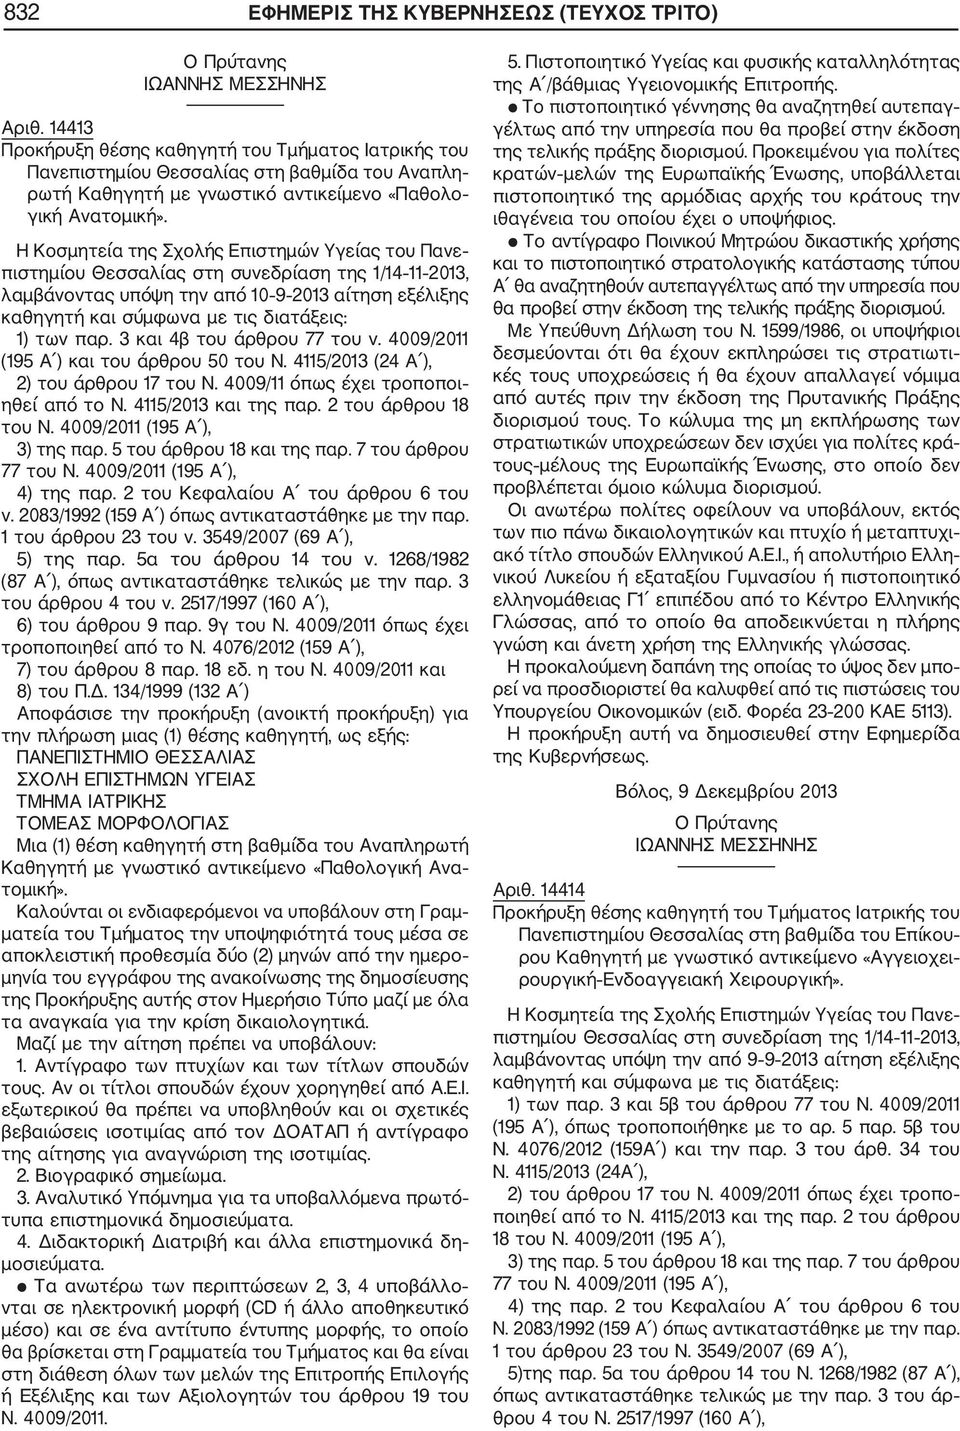 Η Κοσμητεία της Σχολής Επιστημών Υγείας του Πανε πιστημίου Θεσσαλίας στη συνεδρίαση της 1/14 11 2013, λαμβάνοντας υπόψη την από 10 9 2013 αίτηση εξέλιξης καθηγητή και σύμφωνα με τις διατάξεις: 1) των